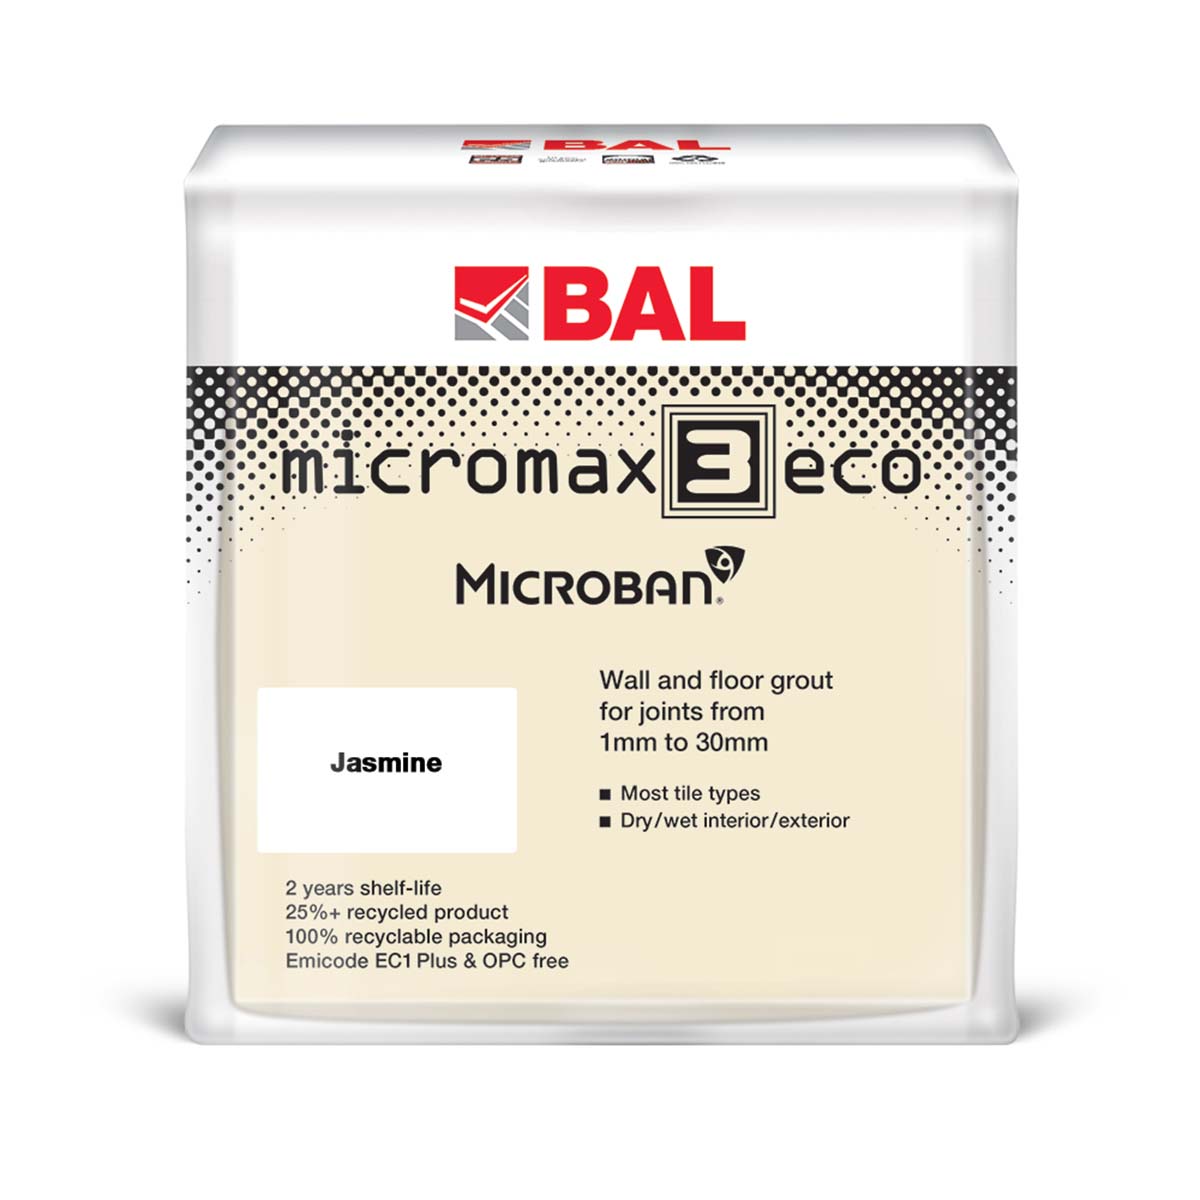 BAL micromax 3 eco wall and floor tile adhesive jasmine